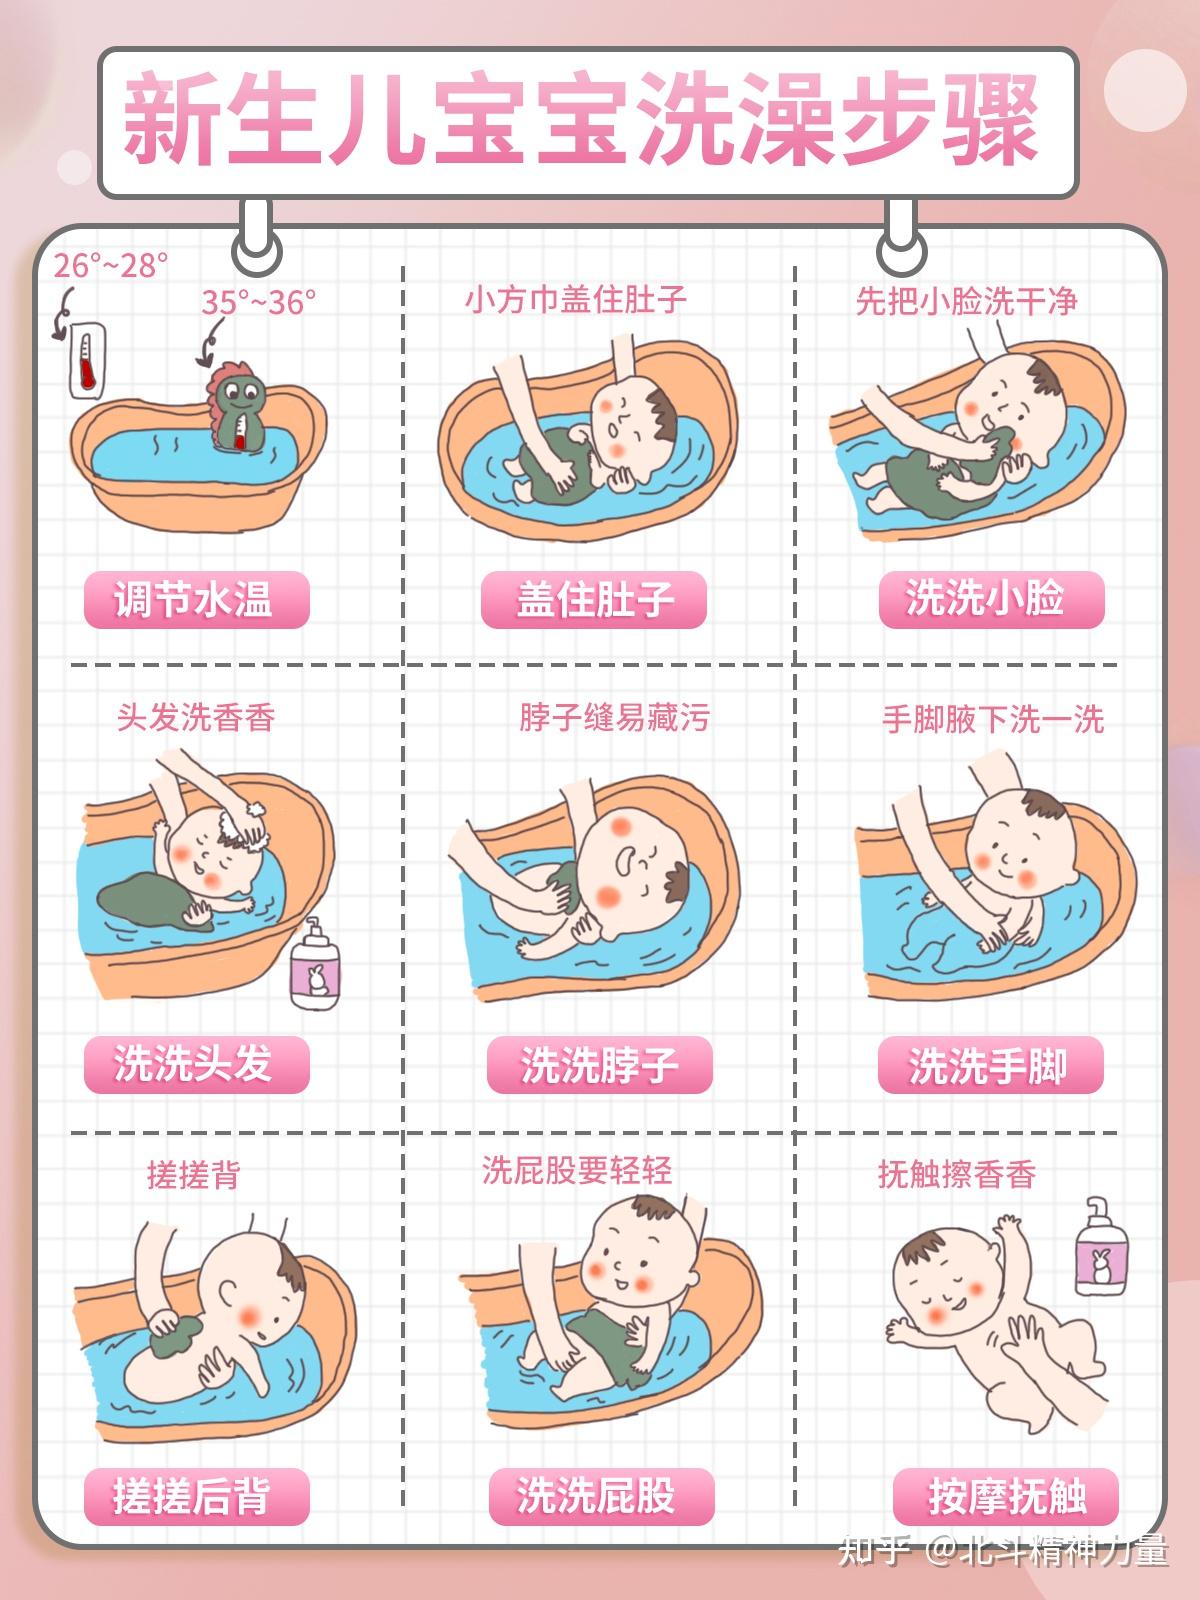 建议收藏新生儿宝宝洗澡步骤及注意事项